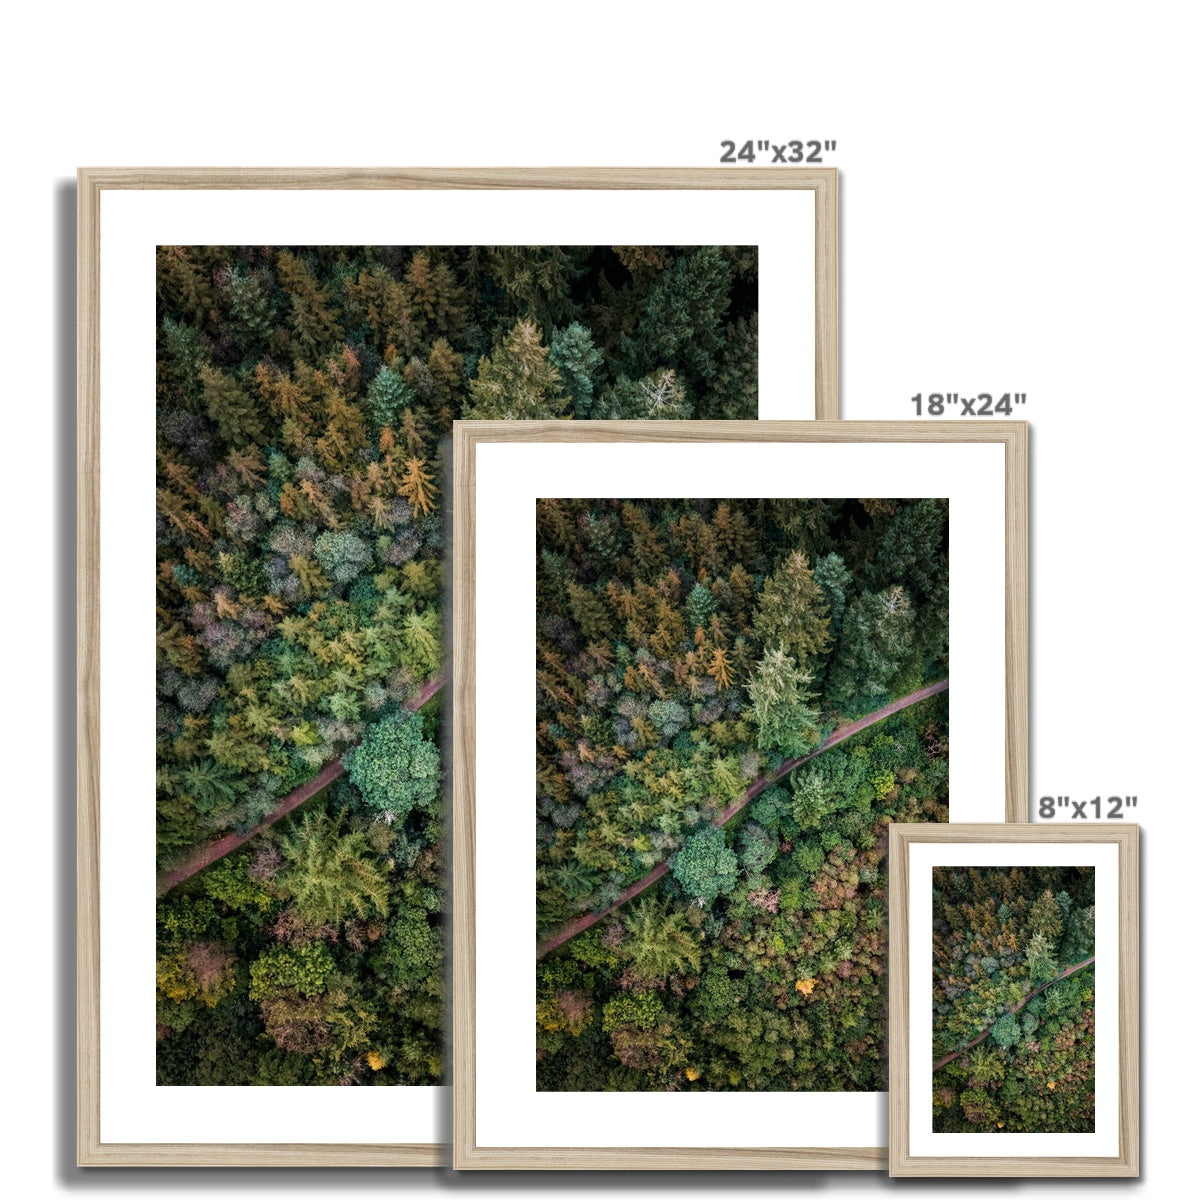 cardinham woods framed photograph